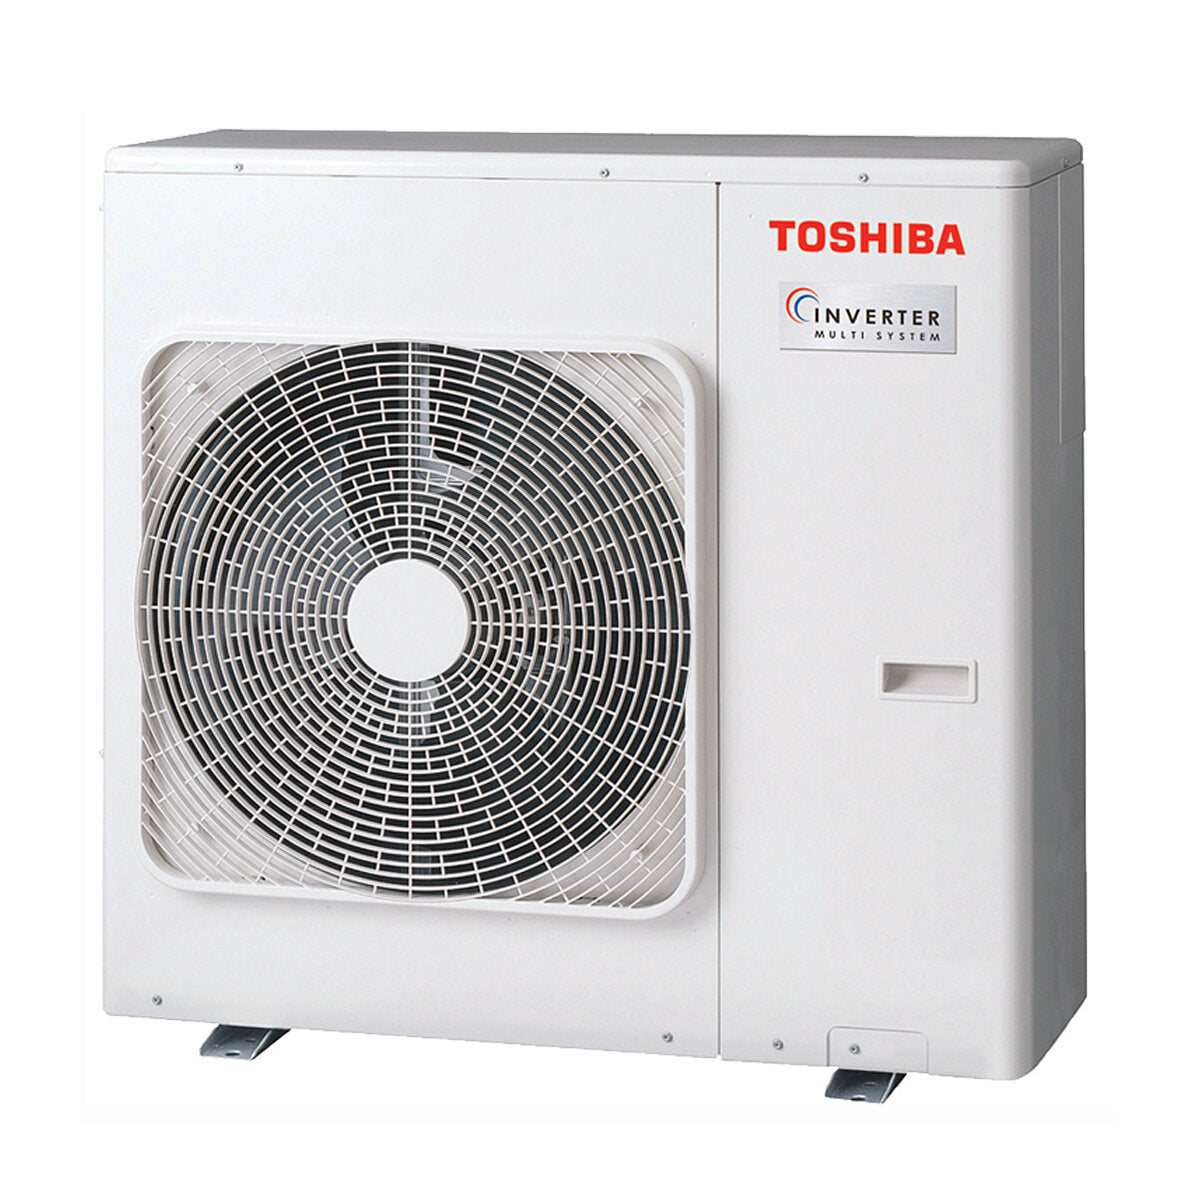 Toshiba Ductable U2 Klimaanlage Penta Split 7000 + 9000 + 9000 + 12000 + 12000 BTU Inverter A++ Außengerät 10,0 kW